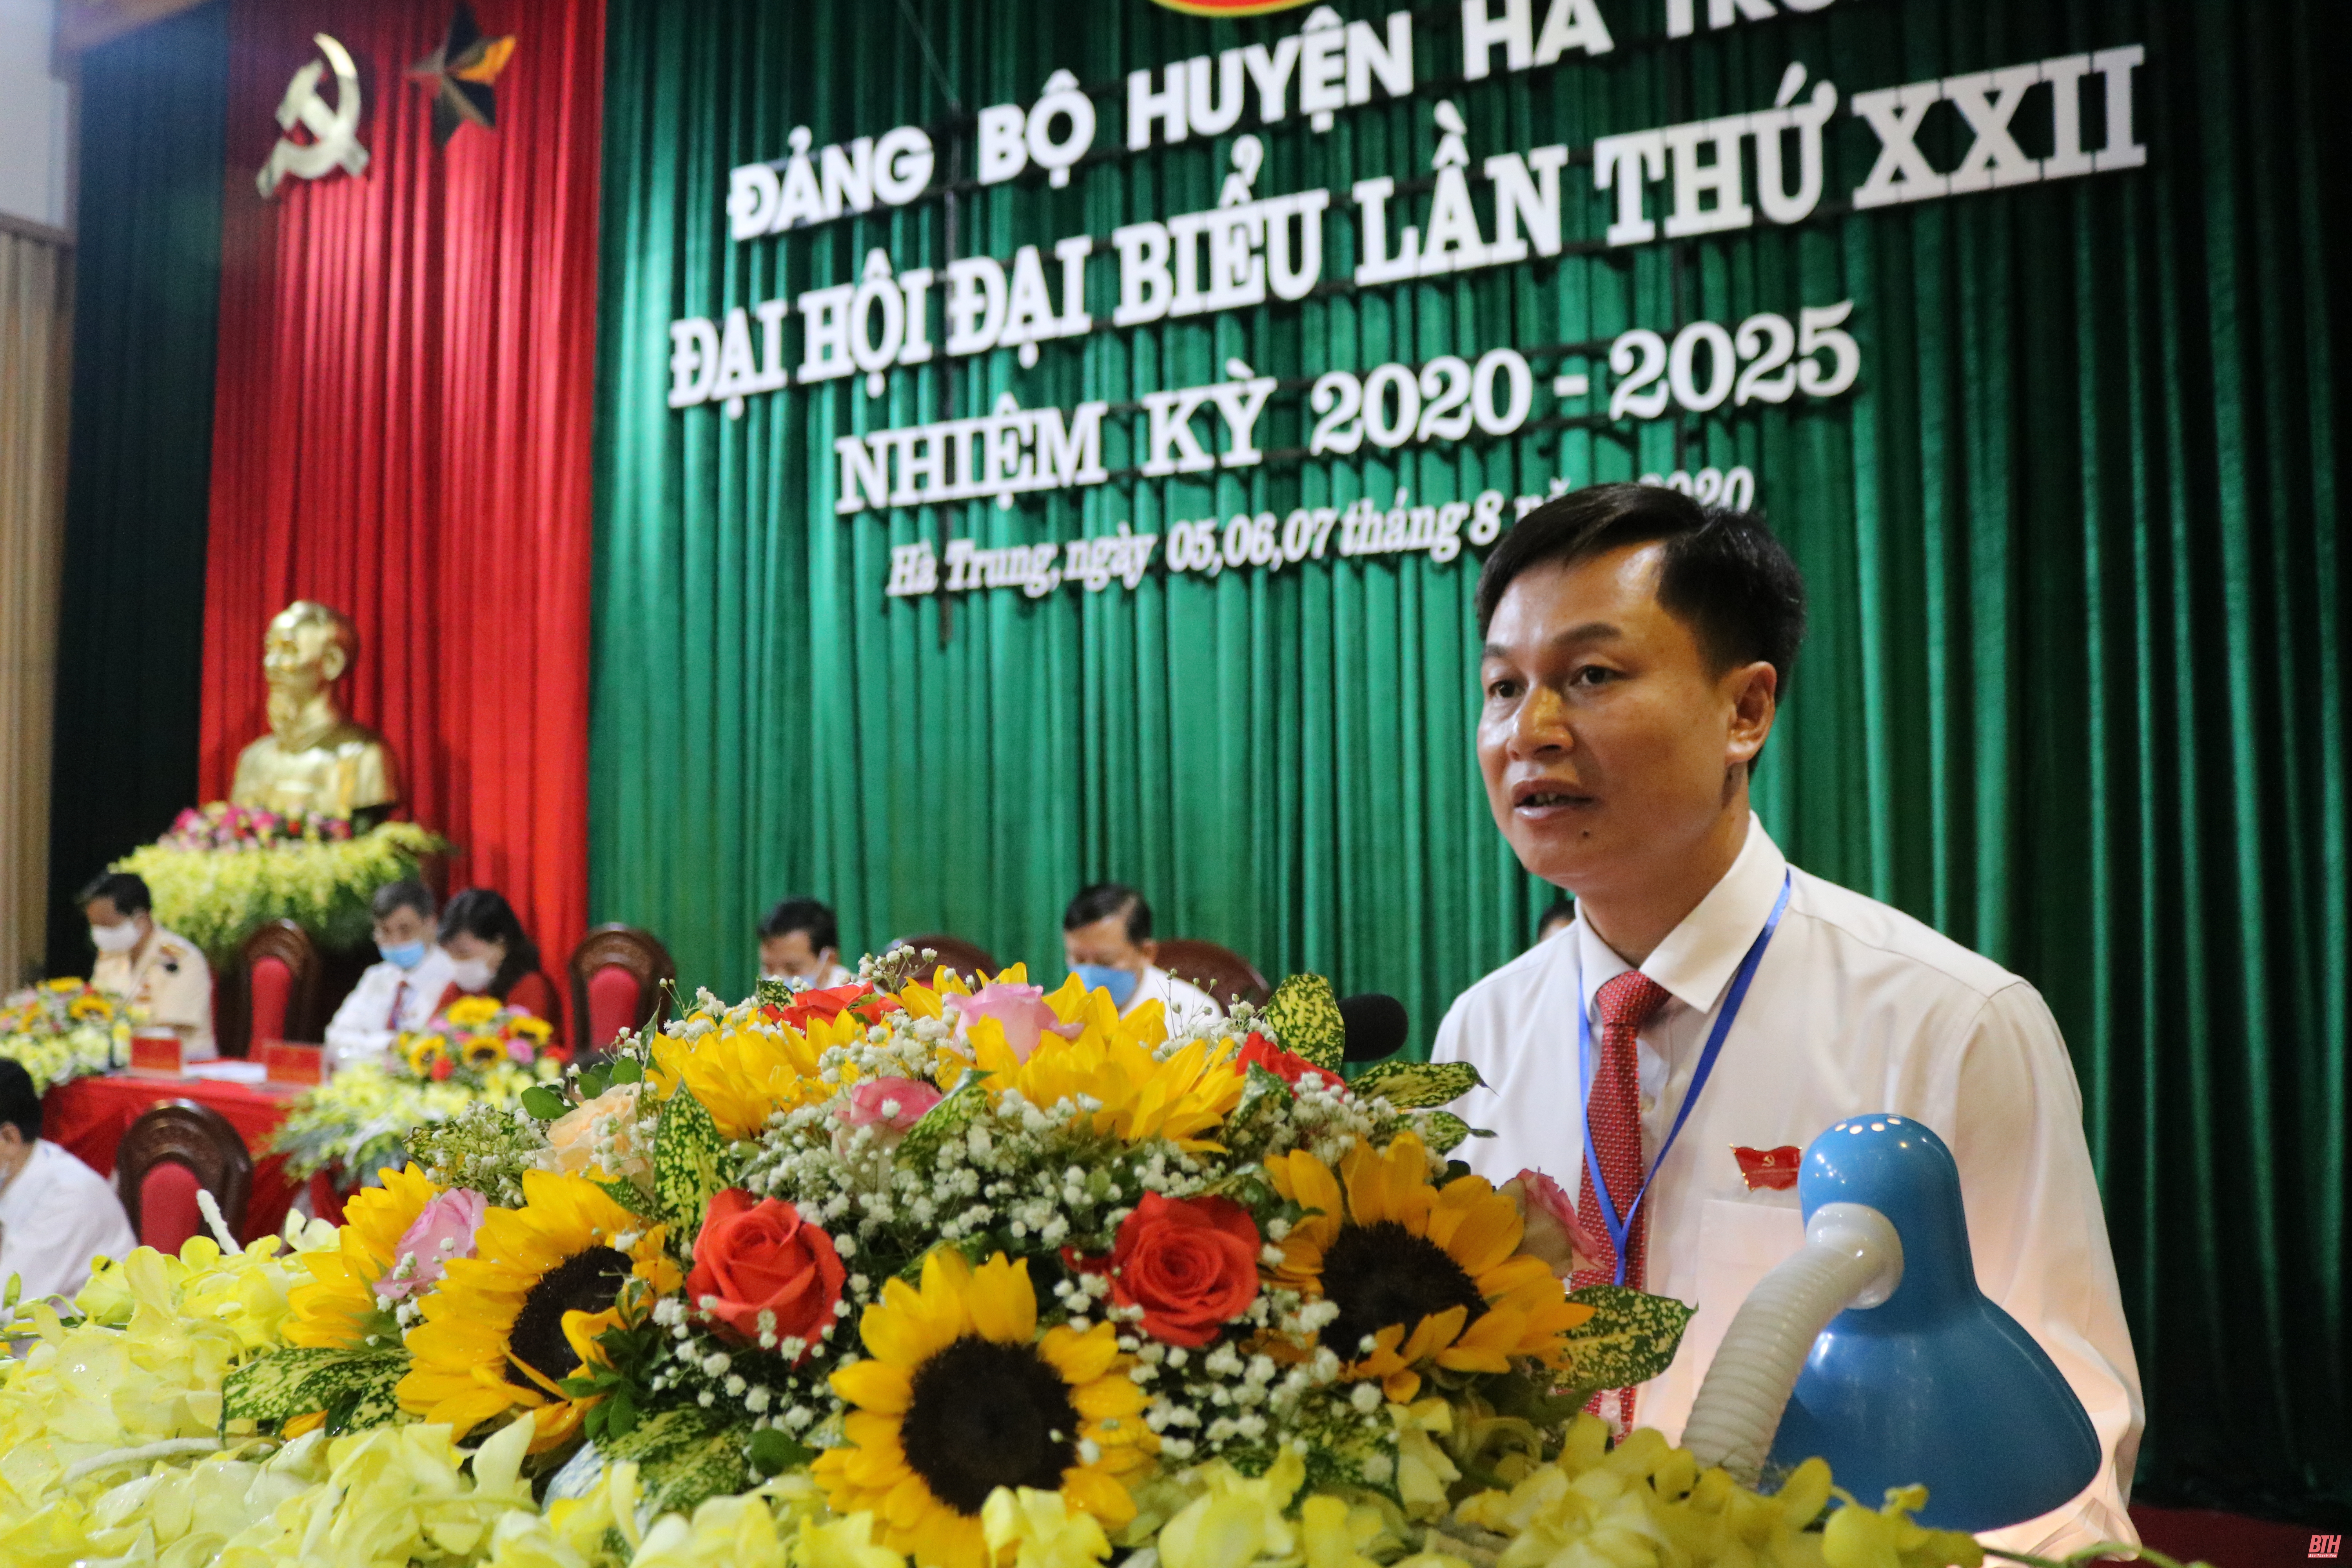 Đại hội đại biểu Đảng bộ huyện Hà Trung lần thứ XXII: Đoàn kết - Kỷ cương - Sáng tạo - Phát triển